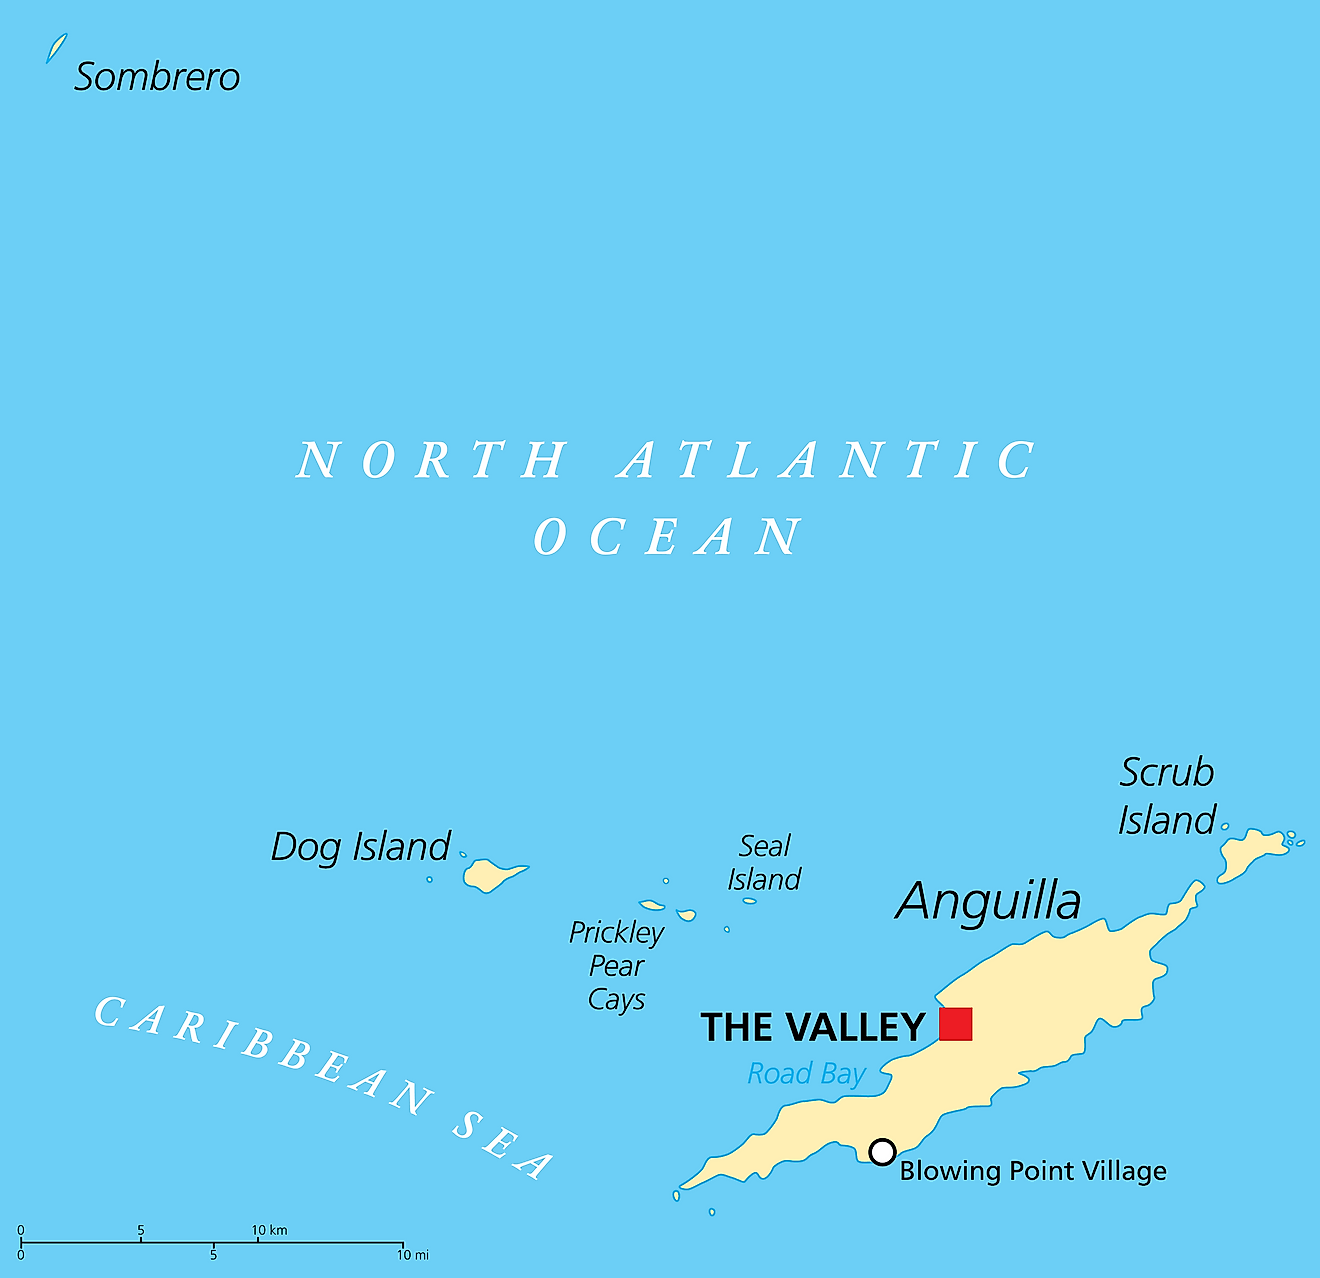 Mapa Político de Anguila mostrando su capital El Valle